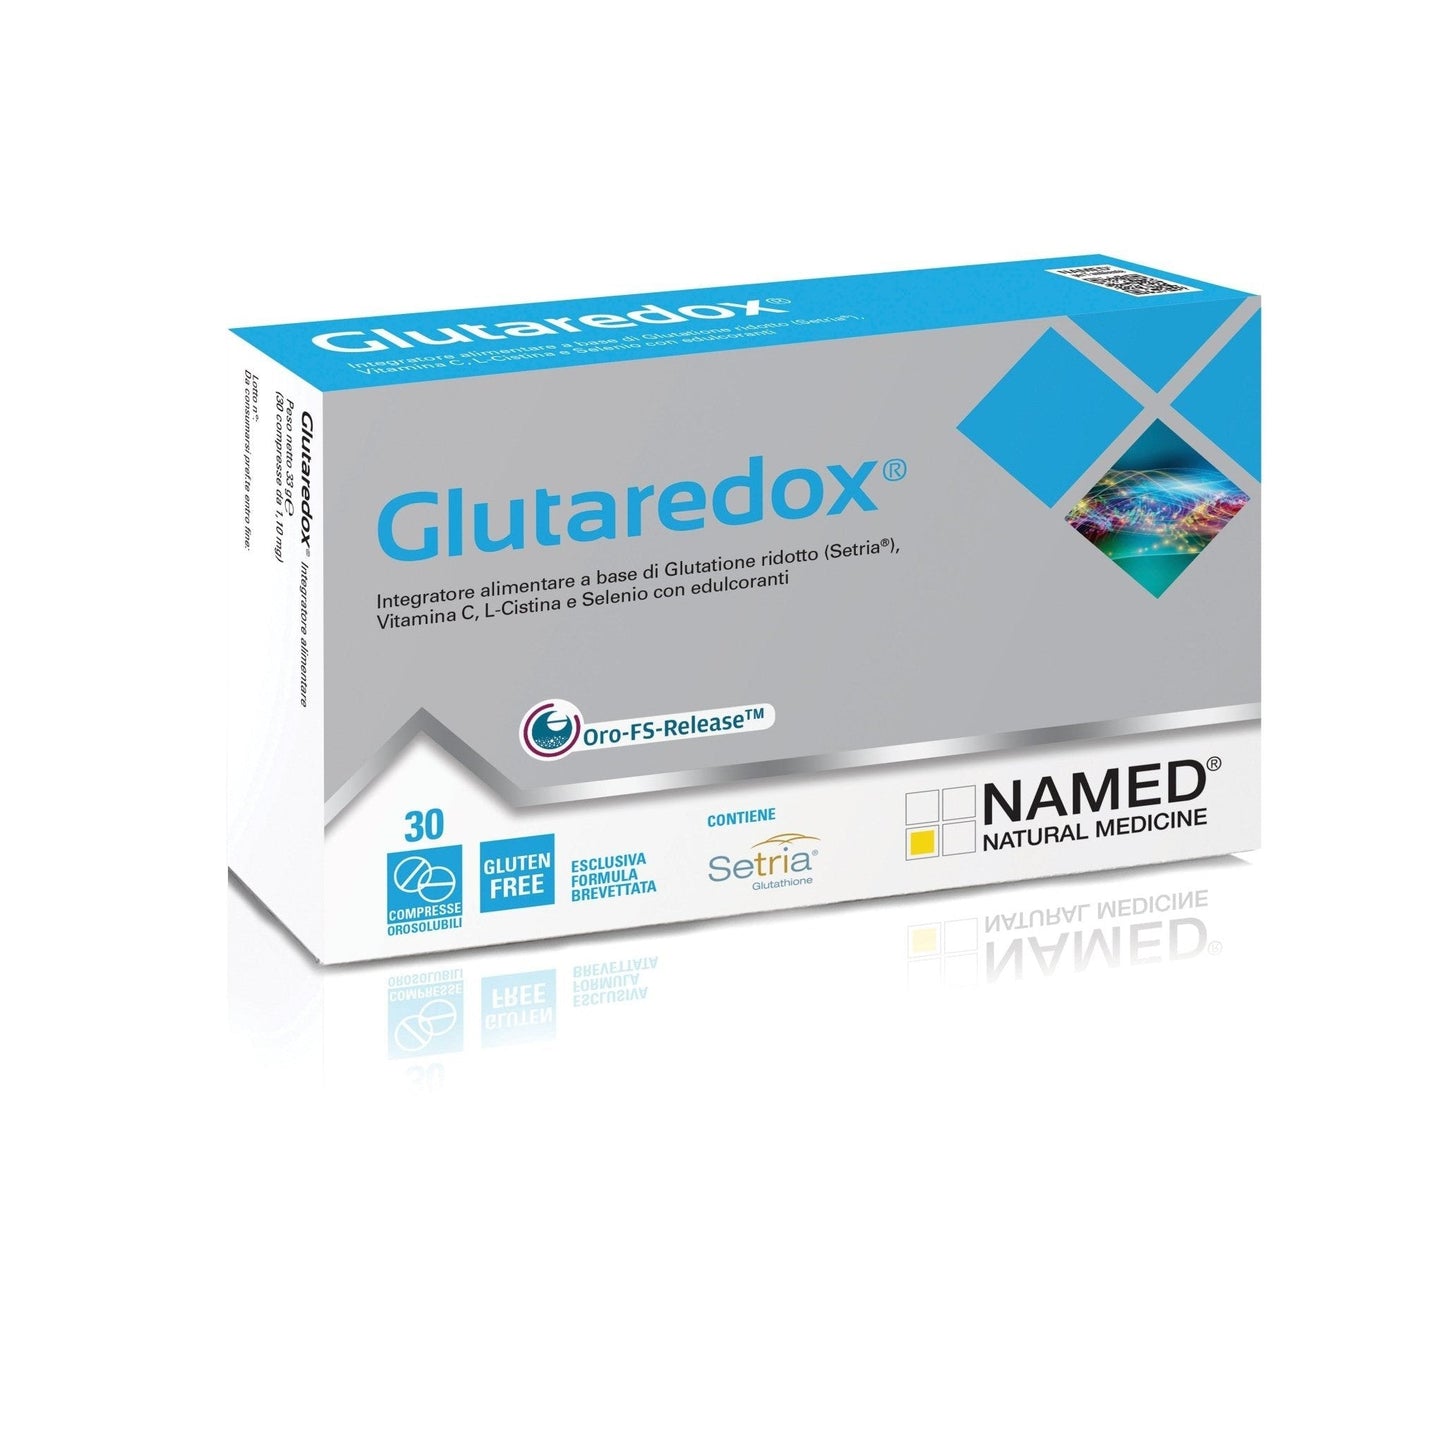 Supliment de Glutation, Glutaredox, 30 comprimate orosolubile, Named-